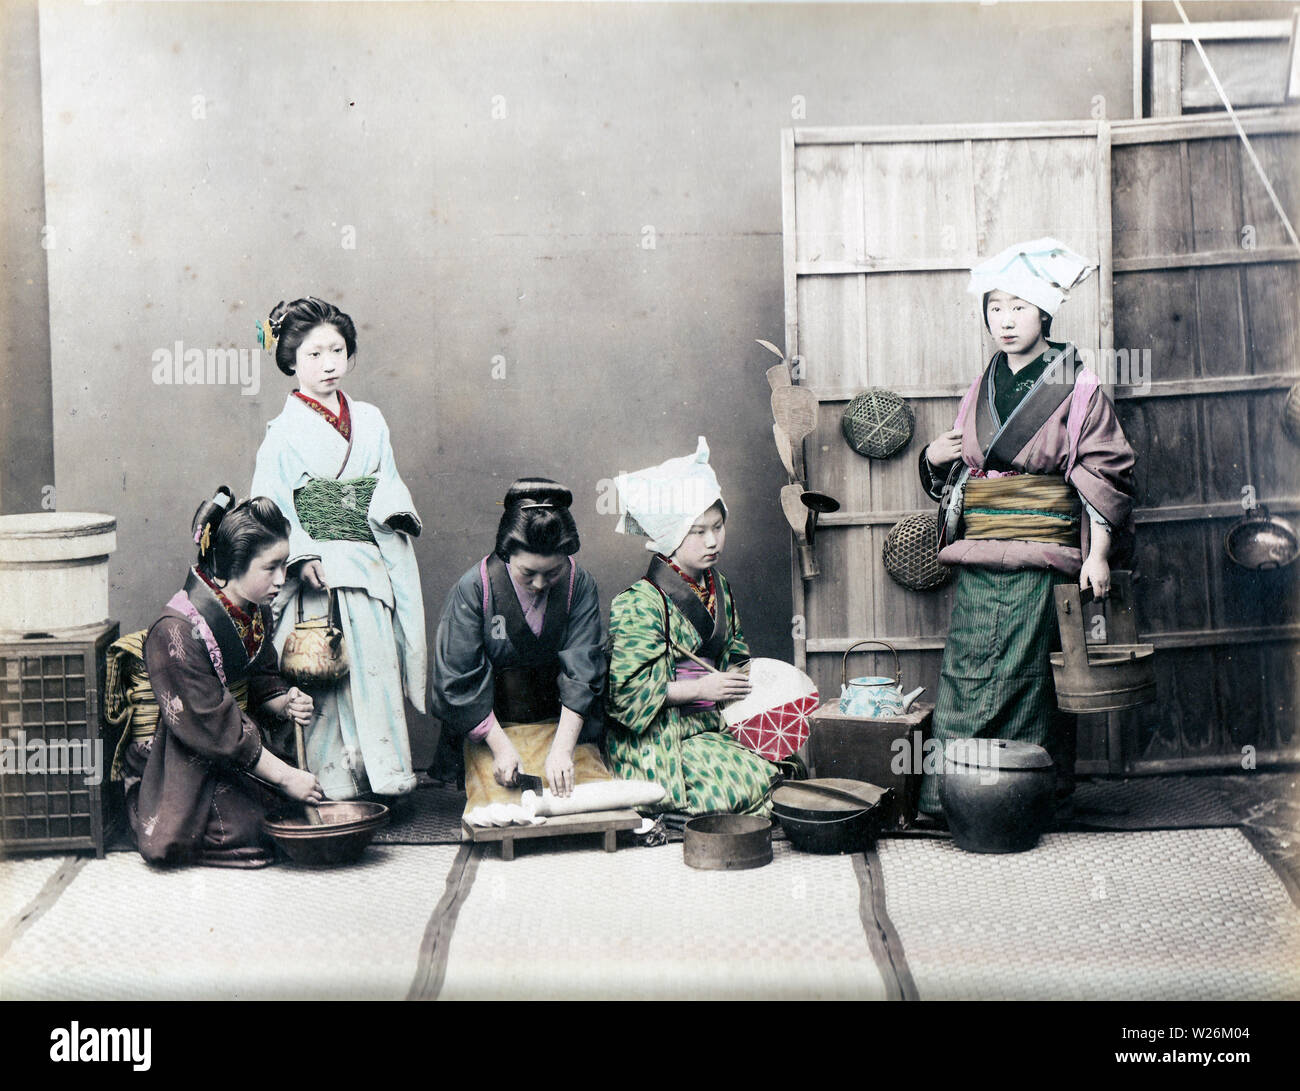 [1890s Japan - Japanische Frauen kochen] - In diesem Studio Foto der täglichen Küche, vier Frauen im Kimono typisch japanische Küche Aufgaben zeigen, die Frau auf der linken Seite ist das Schleifen etwas in einem suribachi (Mörtel). Die Frau, die neben ihrem hält eine Gusseisen Teekanne), während die Frau in der Mitte ist Schneiden daikon Rettich (Japanisch). 19 Vintage albumen Foto. Stockfoto